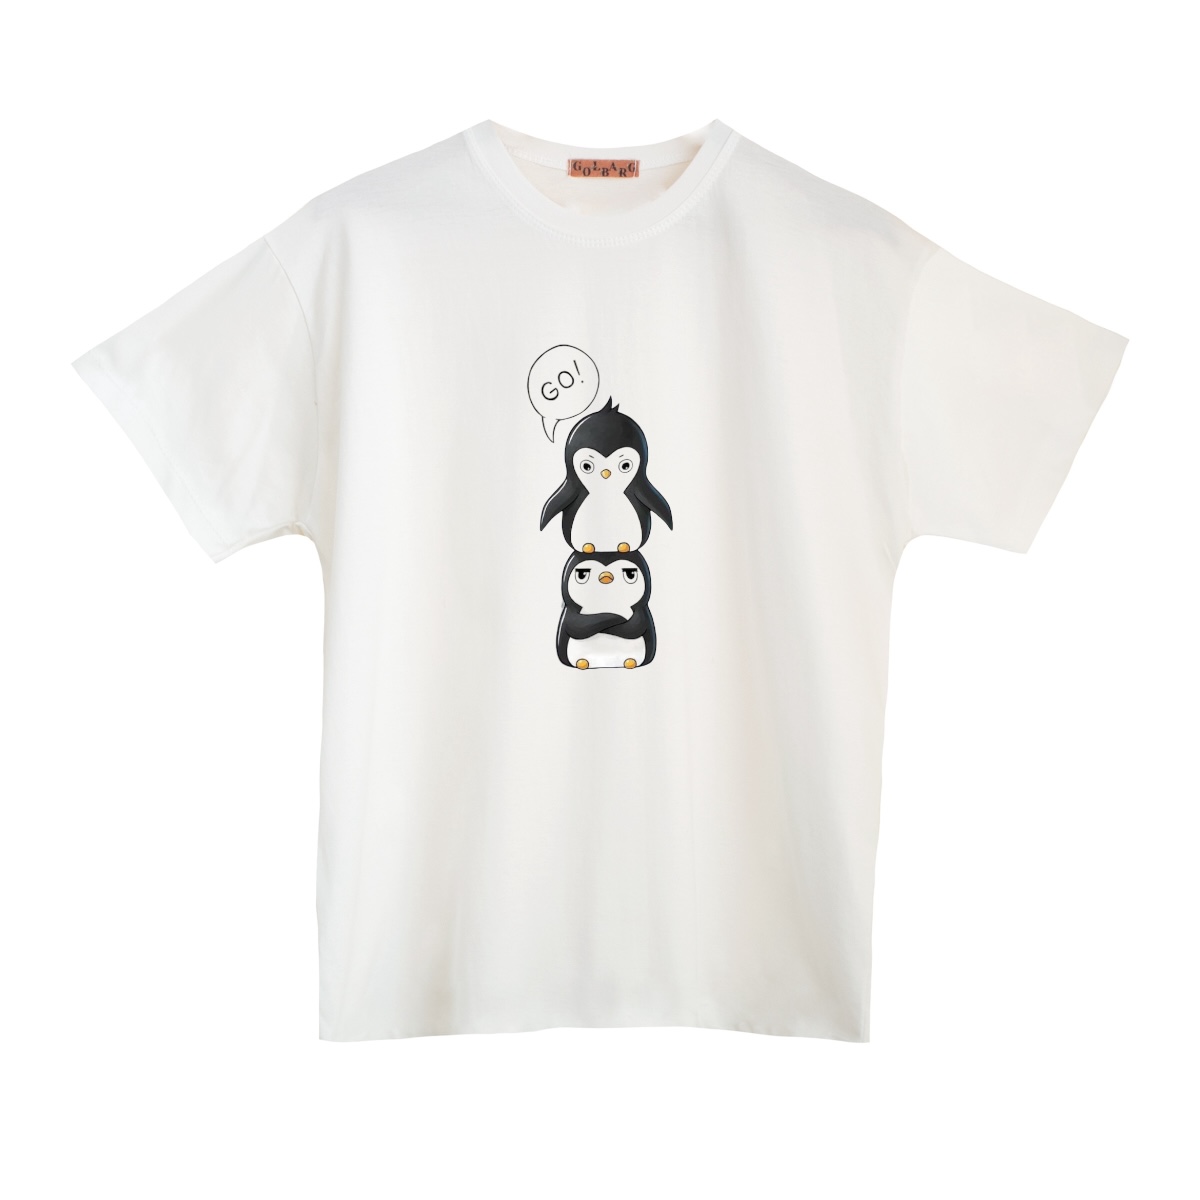 تی شرت بچگانه مدل پنگوئن کد 5 -  - 1